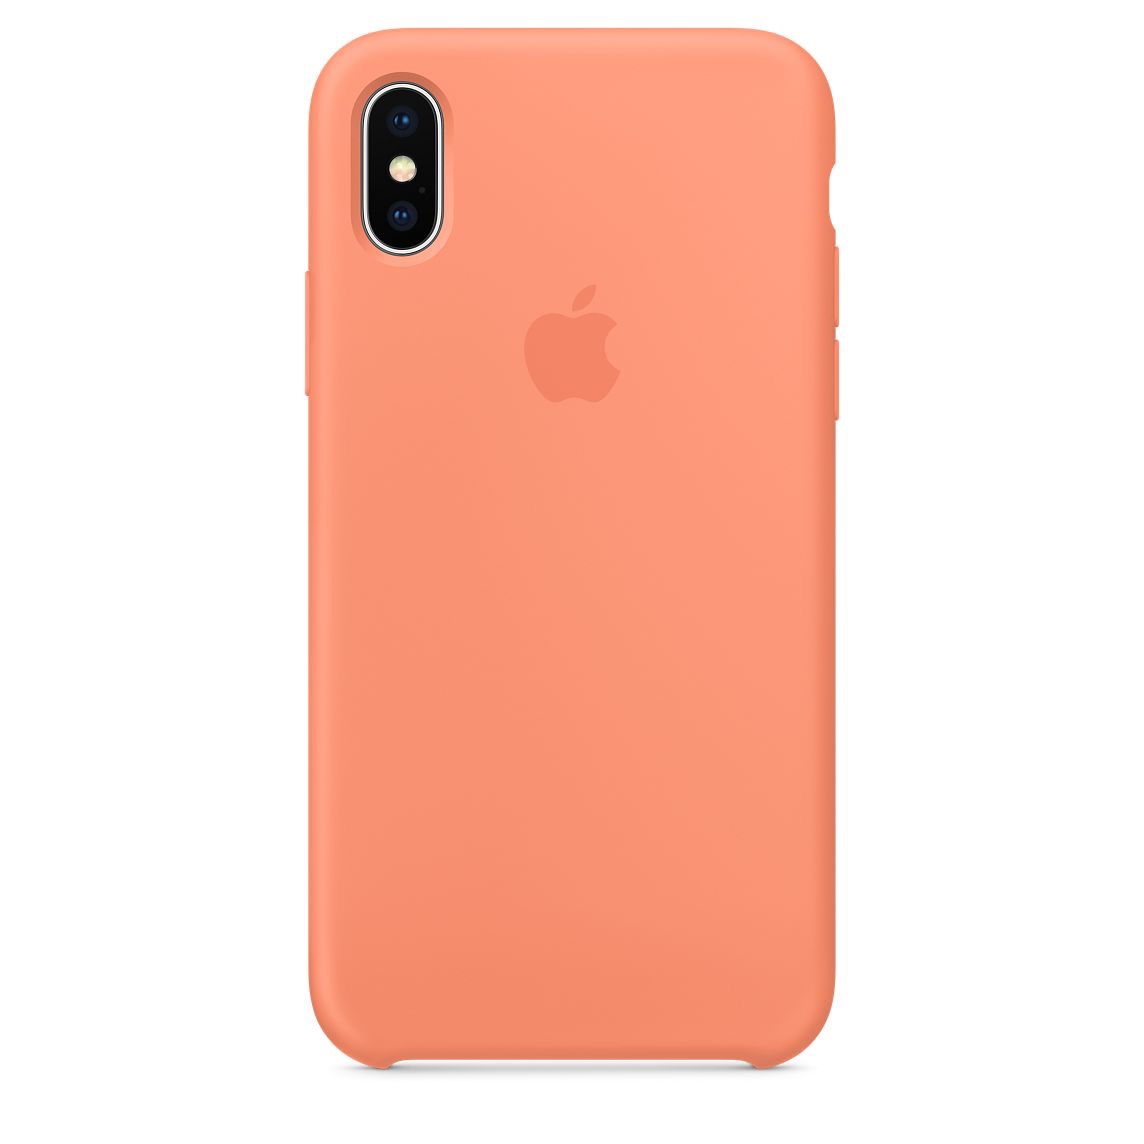 Apple、｢iPhone｣向けシリコーンケースに新色を追加 − ｢ピーチ｣や｢マリングリーン｣など